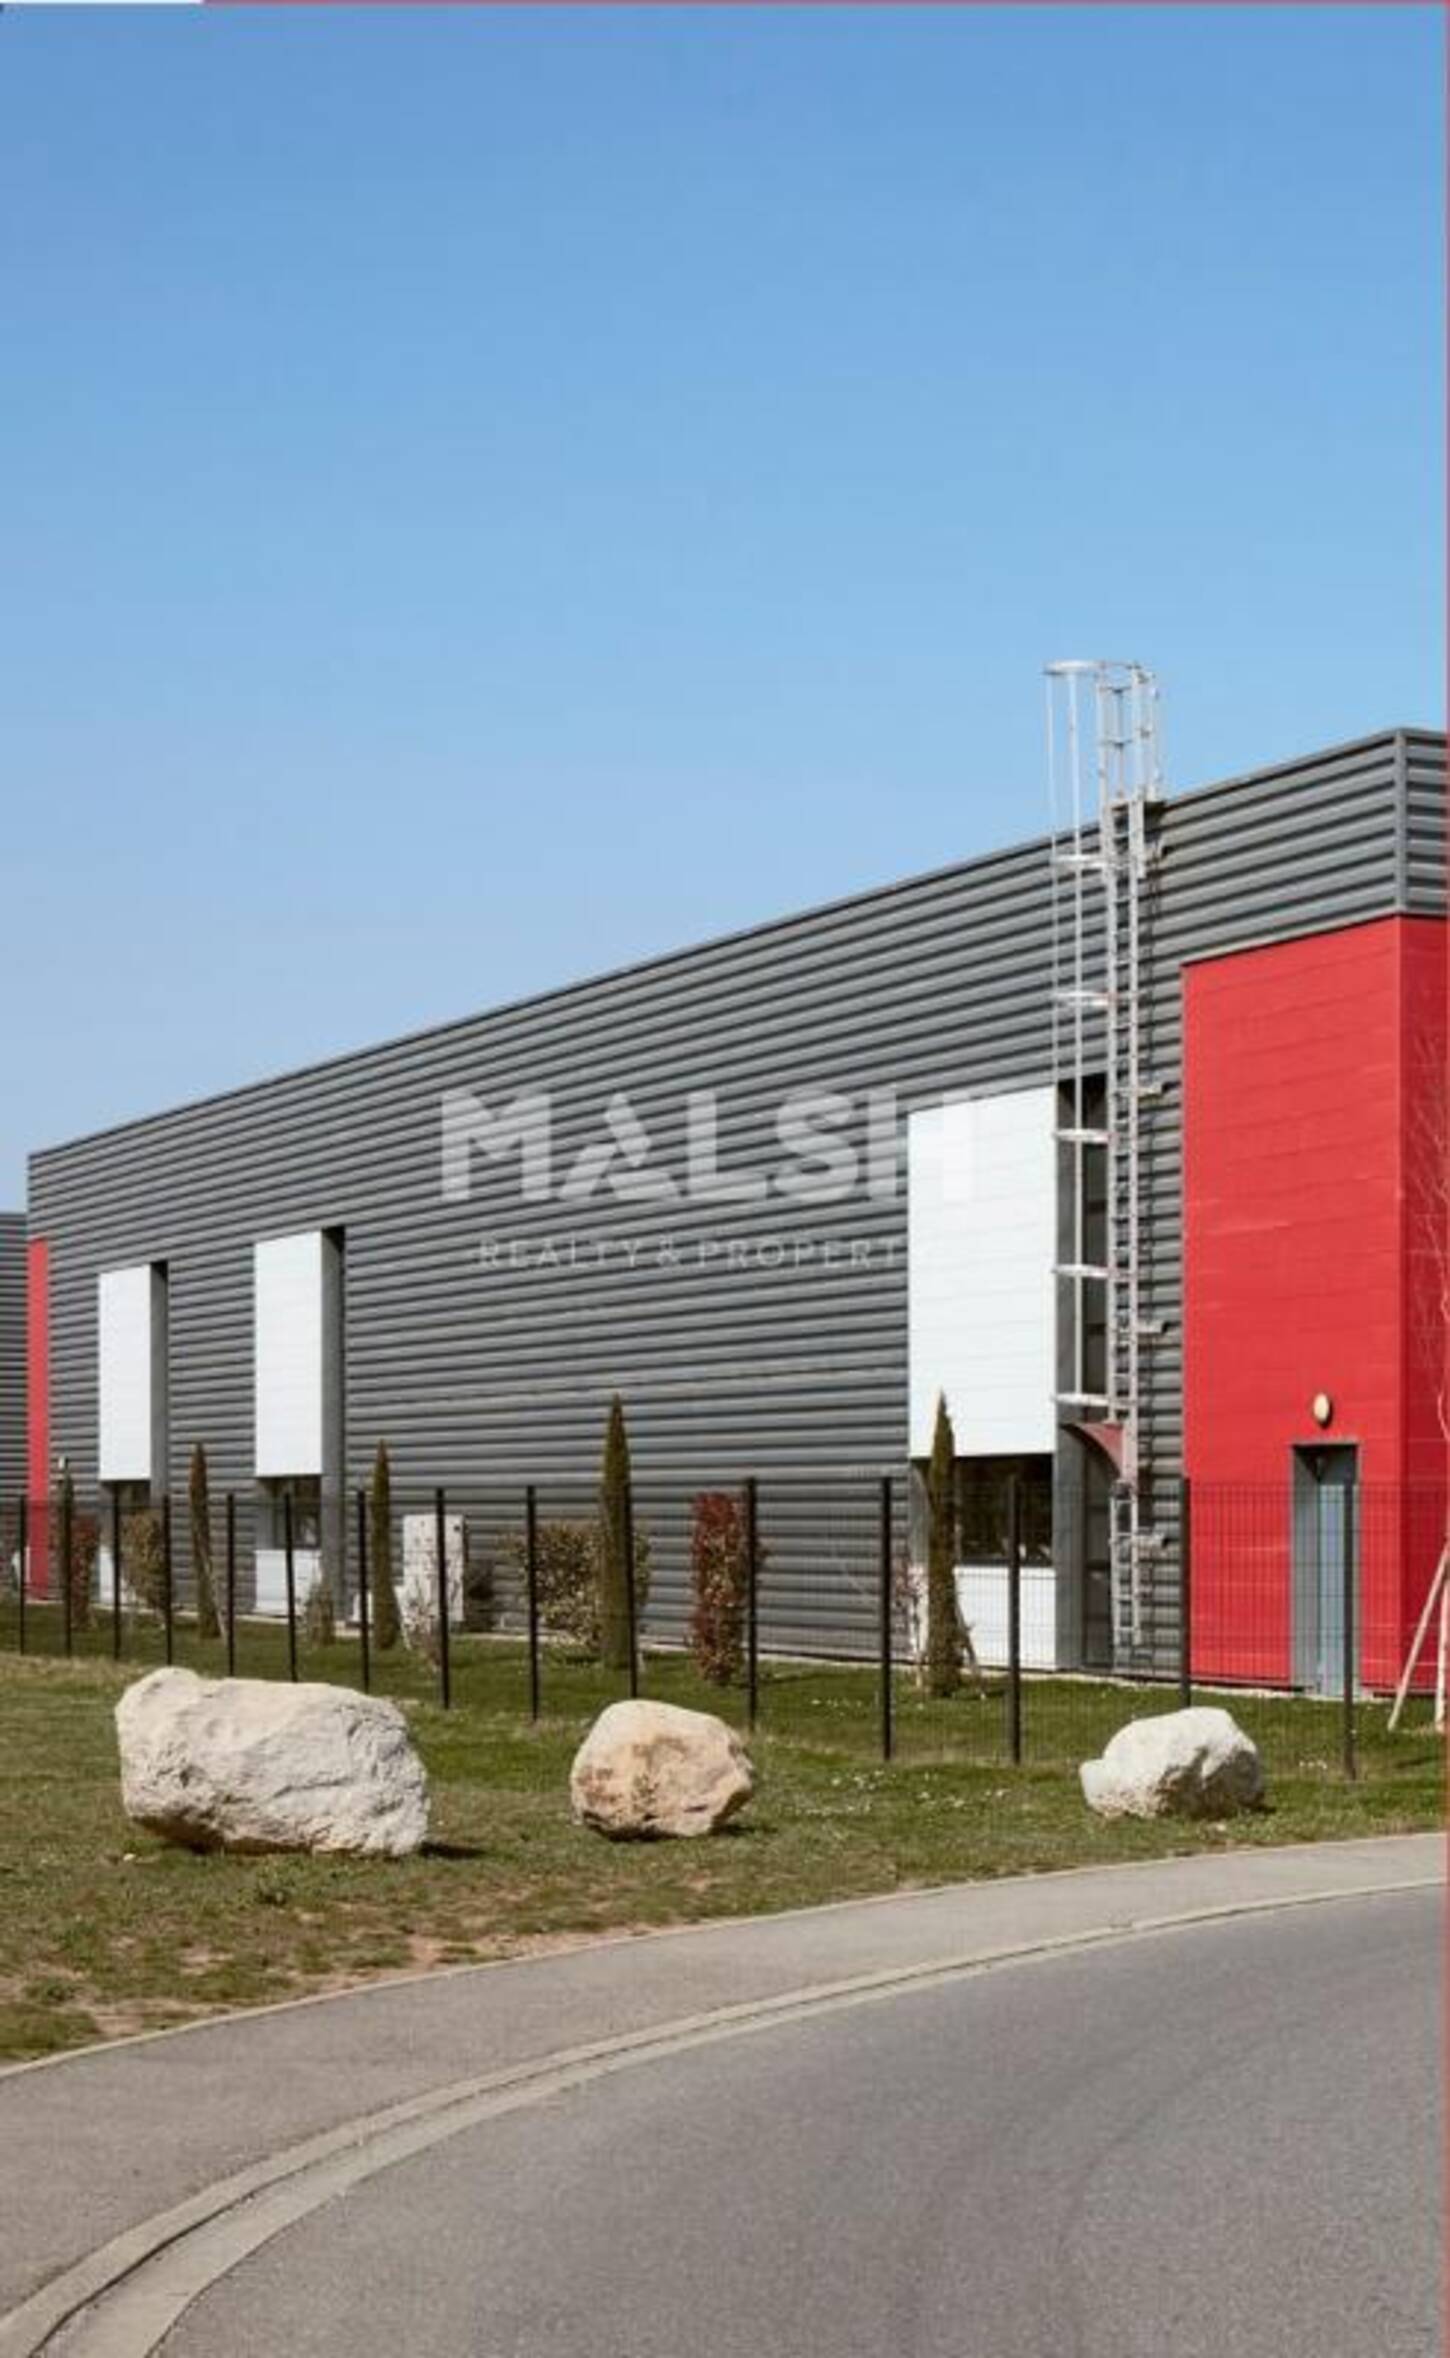 MALSH Realty & Property - Local d'activités - Lyon EST (St Priest /Mi Plaine/ A43 / Eurexpo) - Saint-Priest - 2